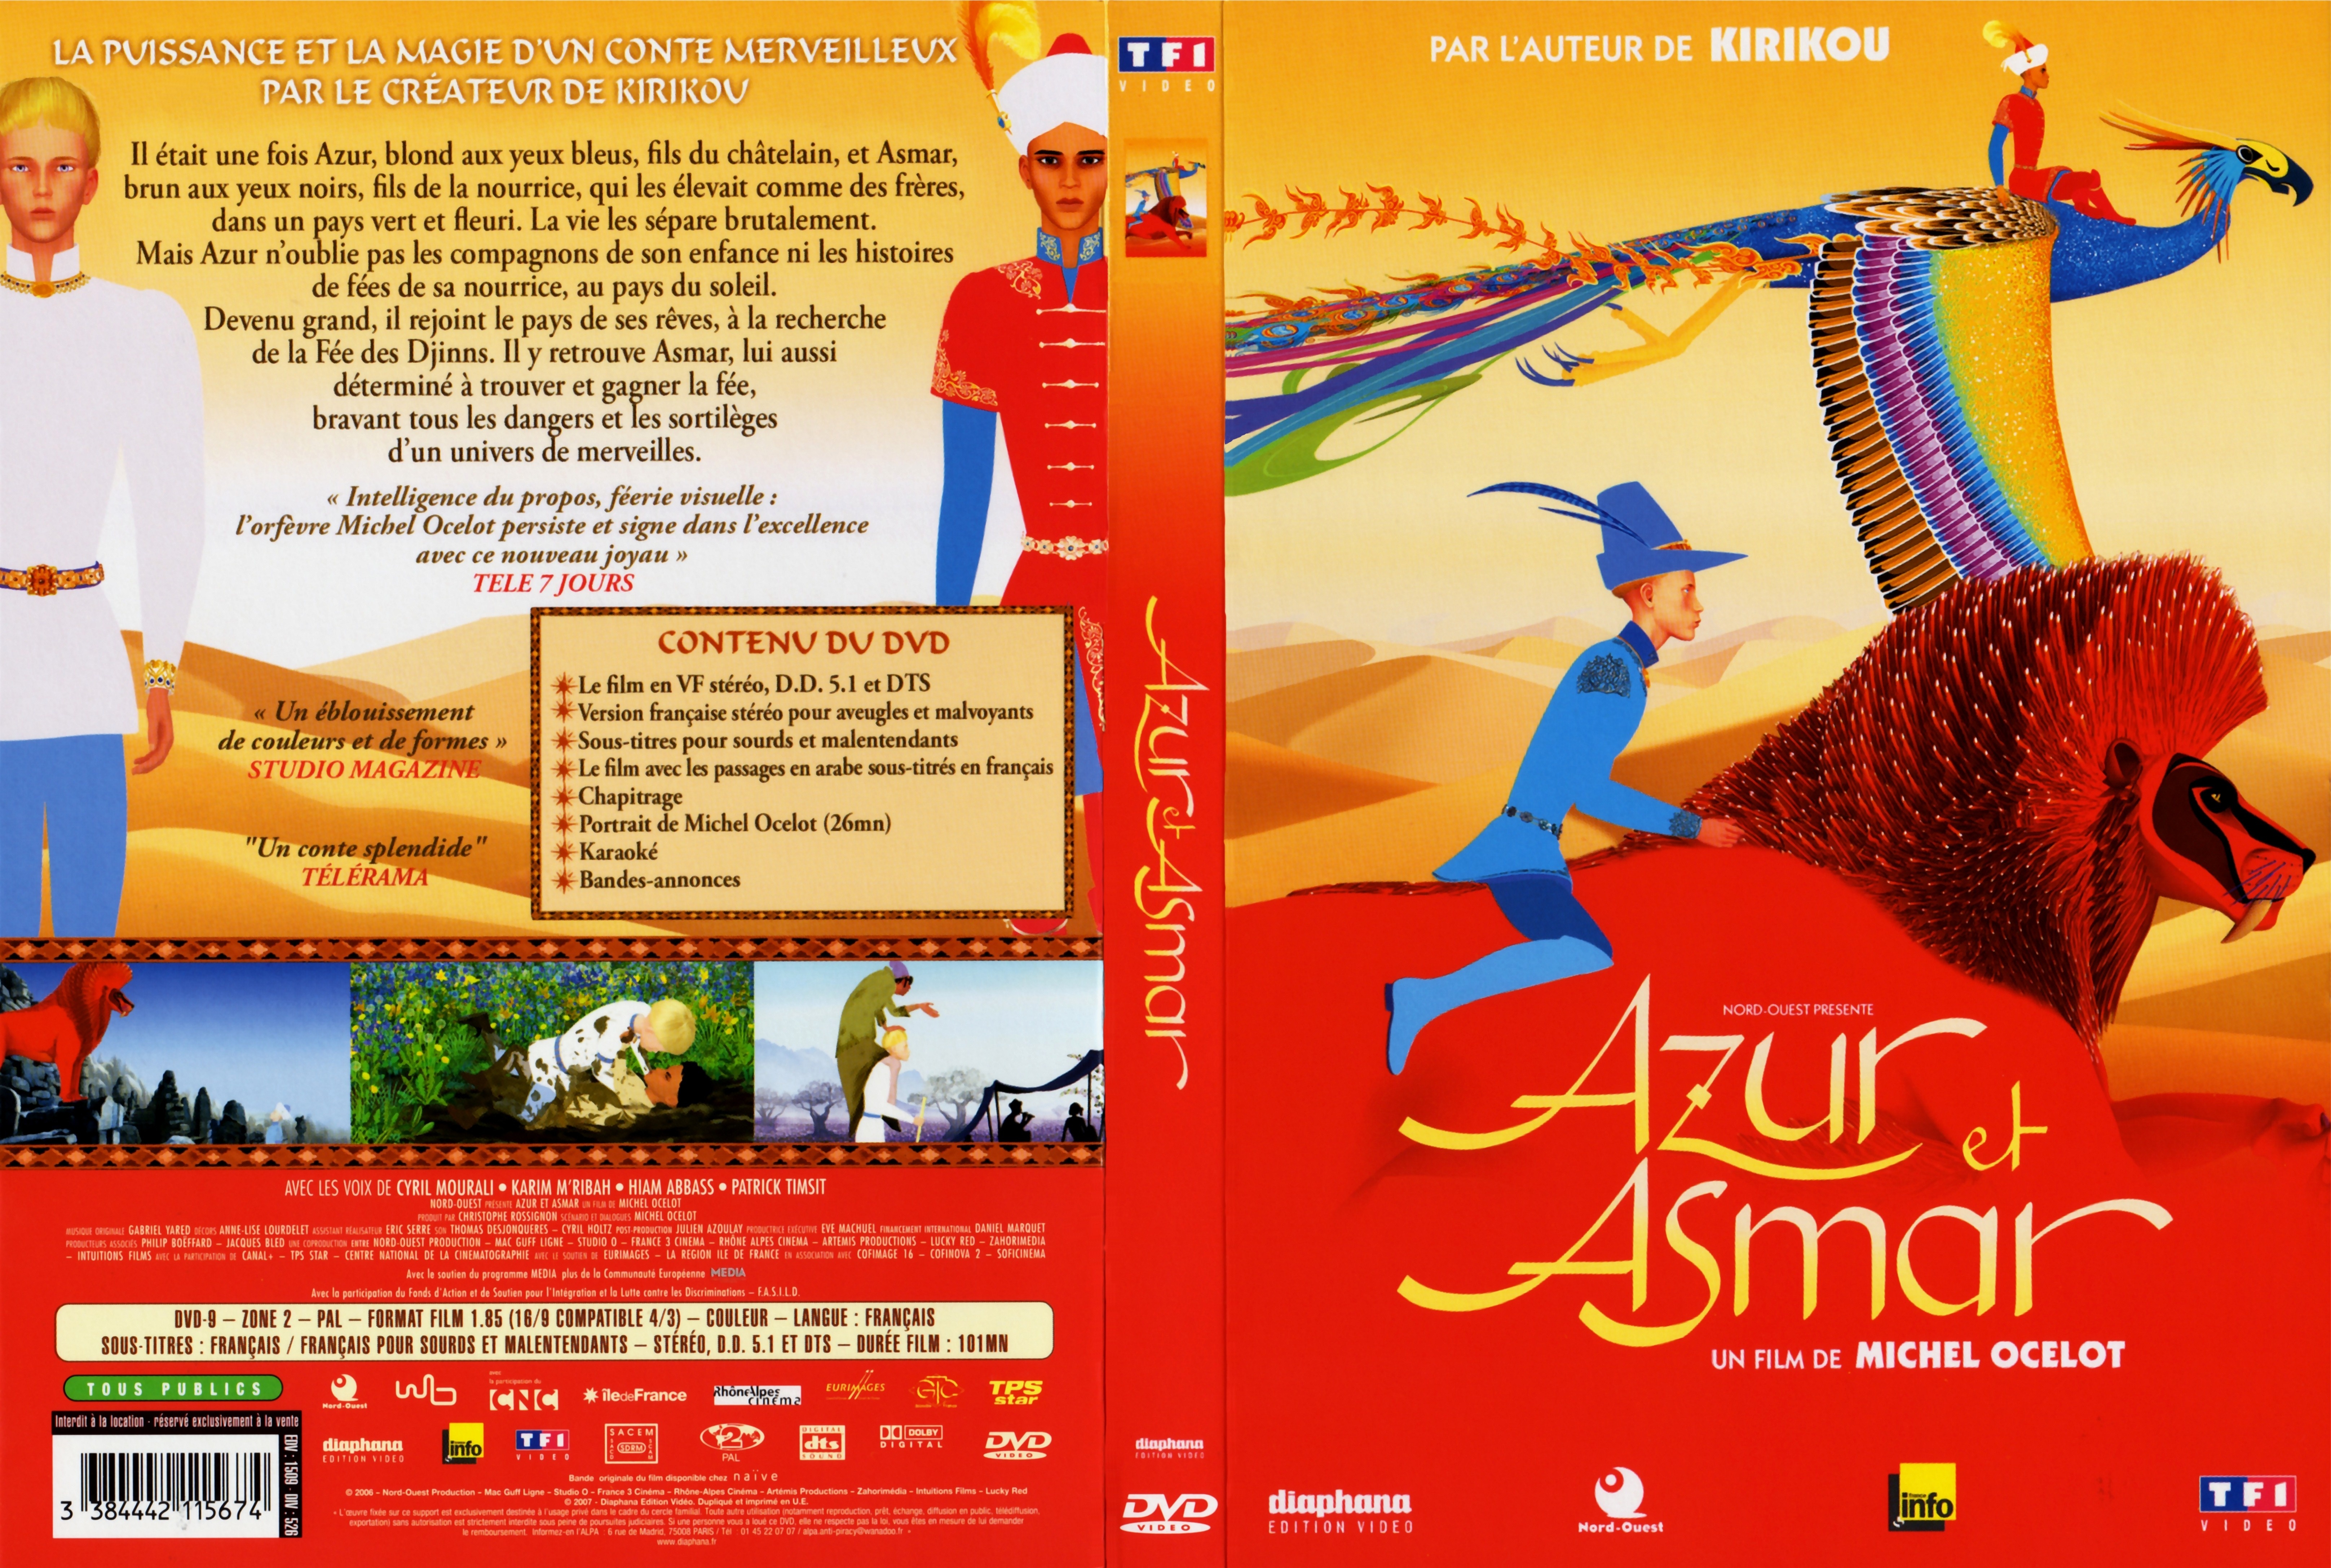 Jaquette DVD Azur et Asmar v2